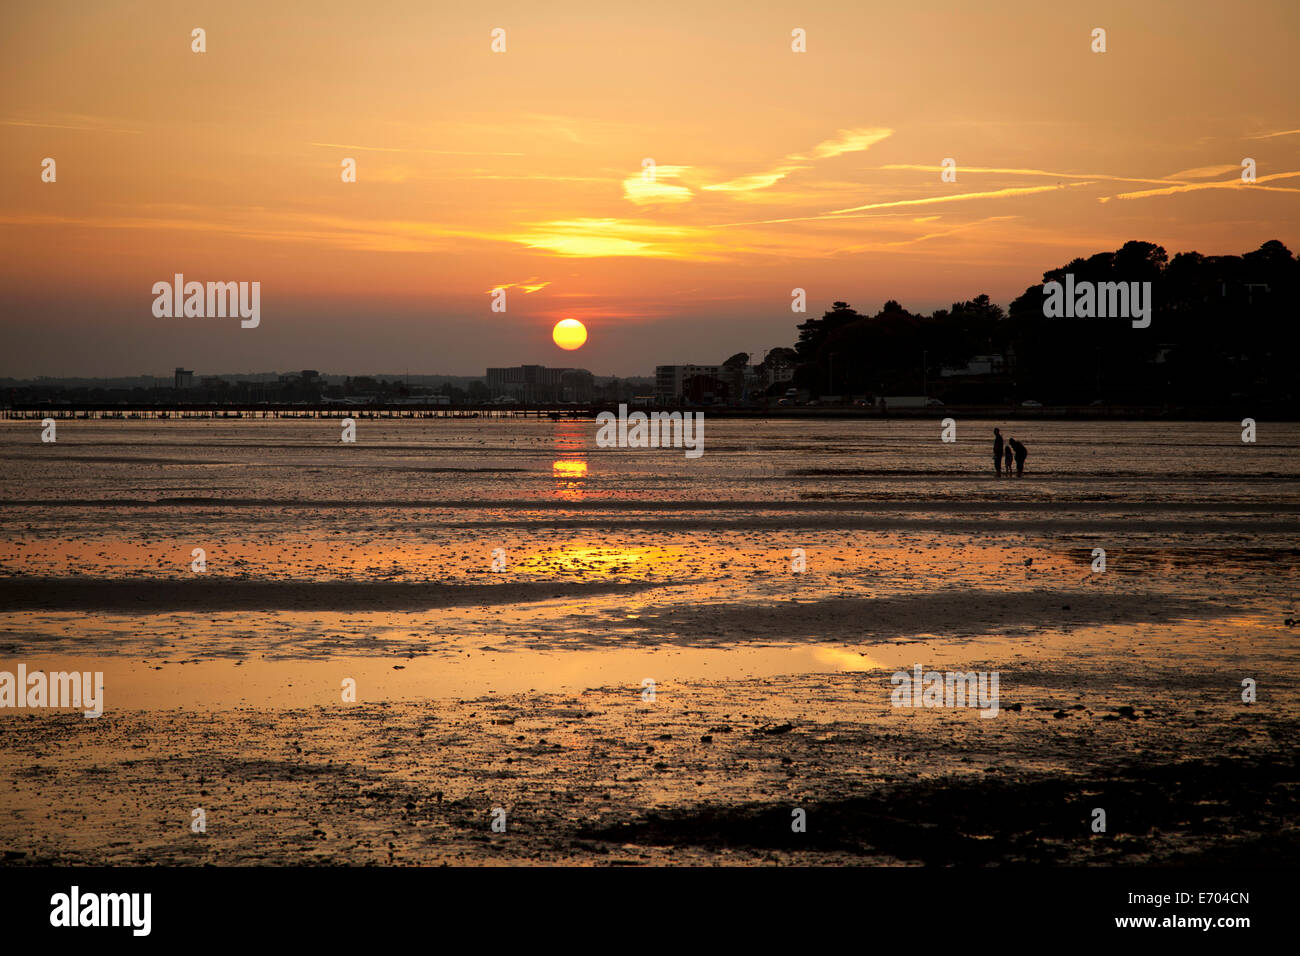 Sunset at beach, Bournemouth, Dorset, UK Stock Photo